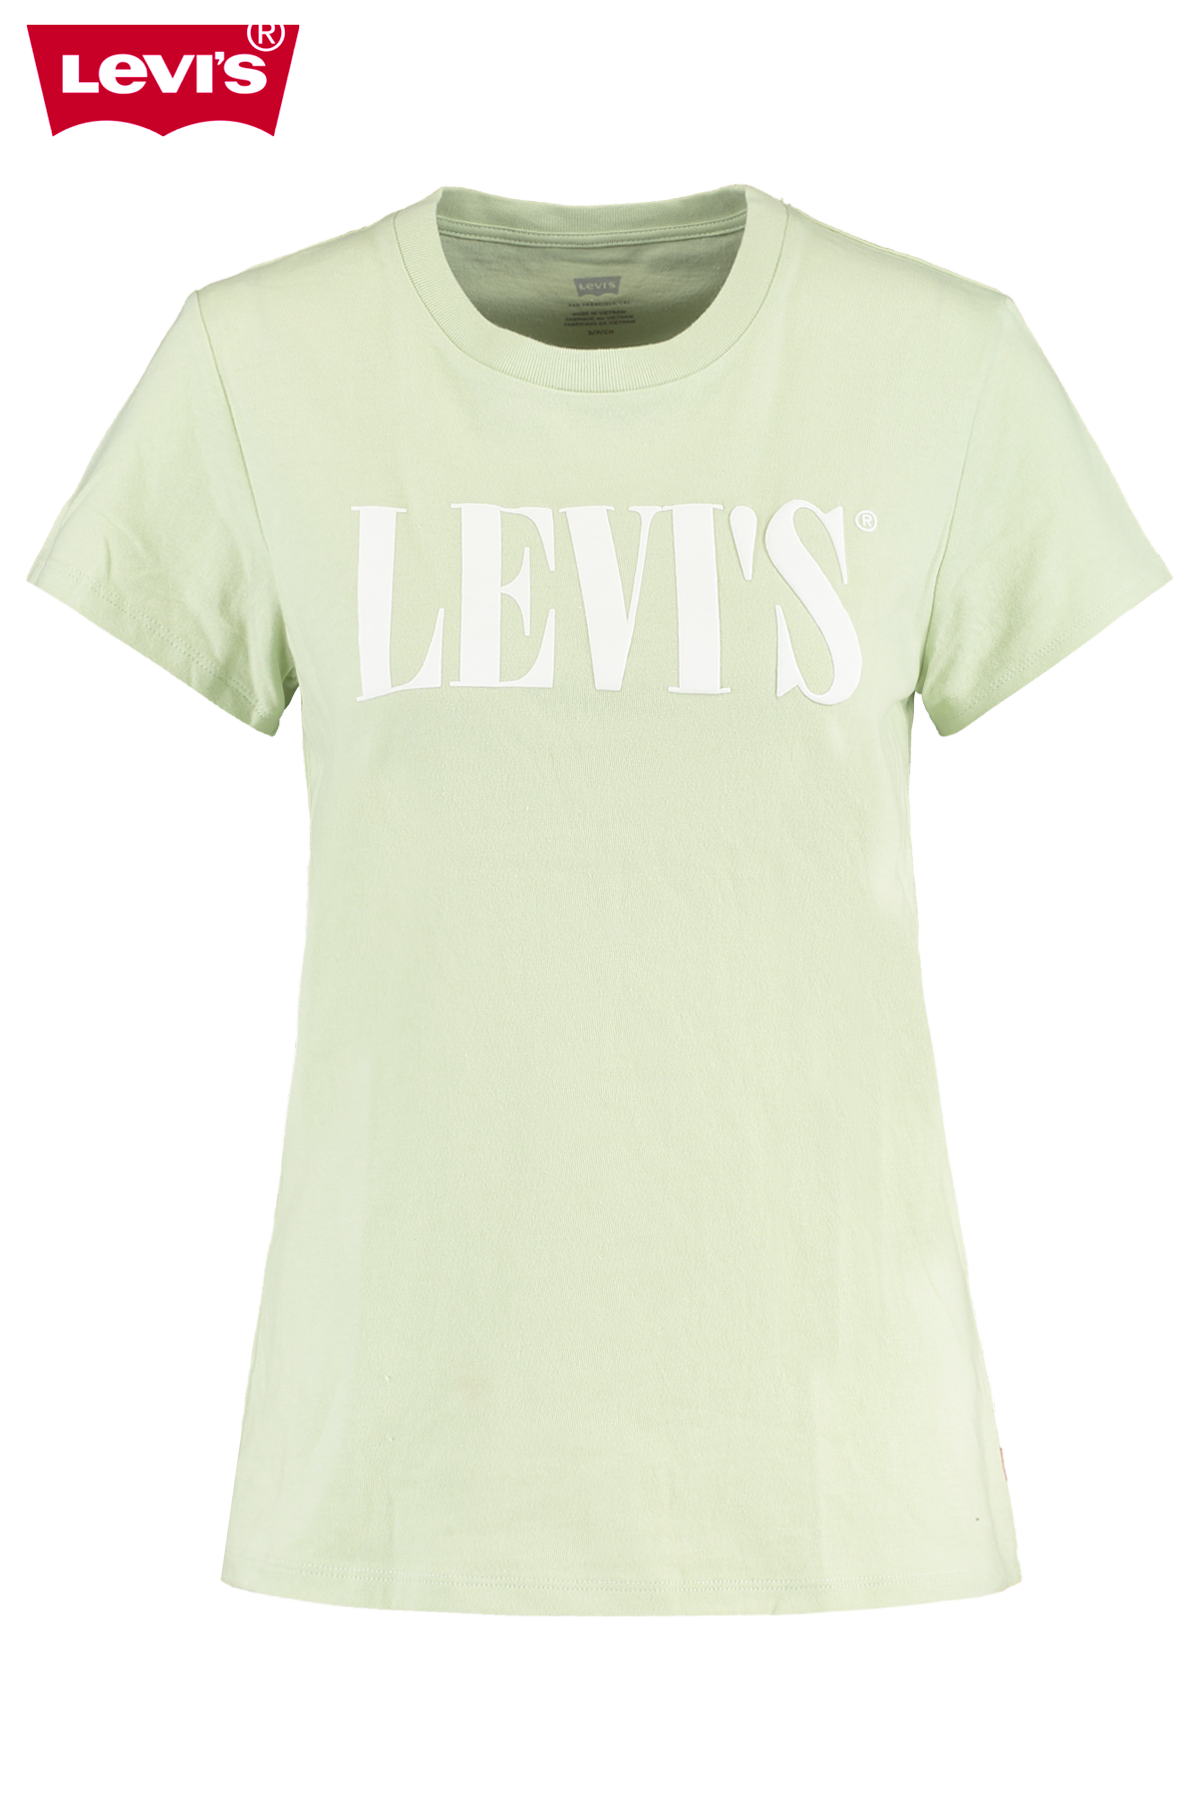 levis t shirt online